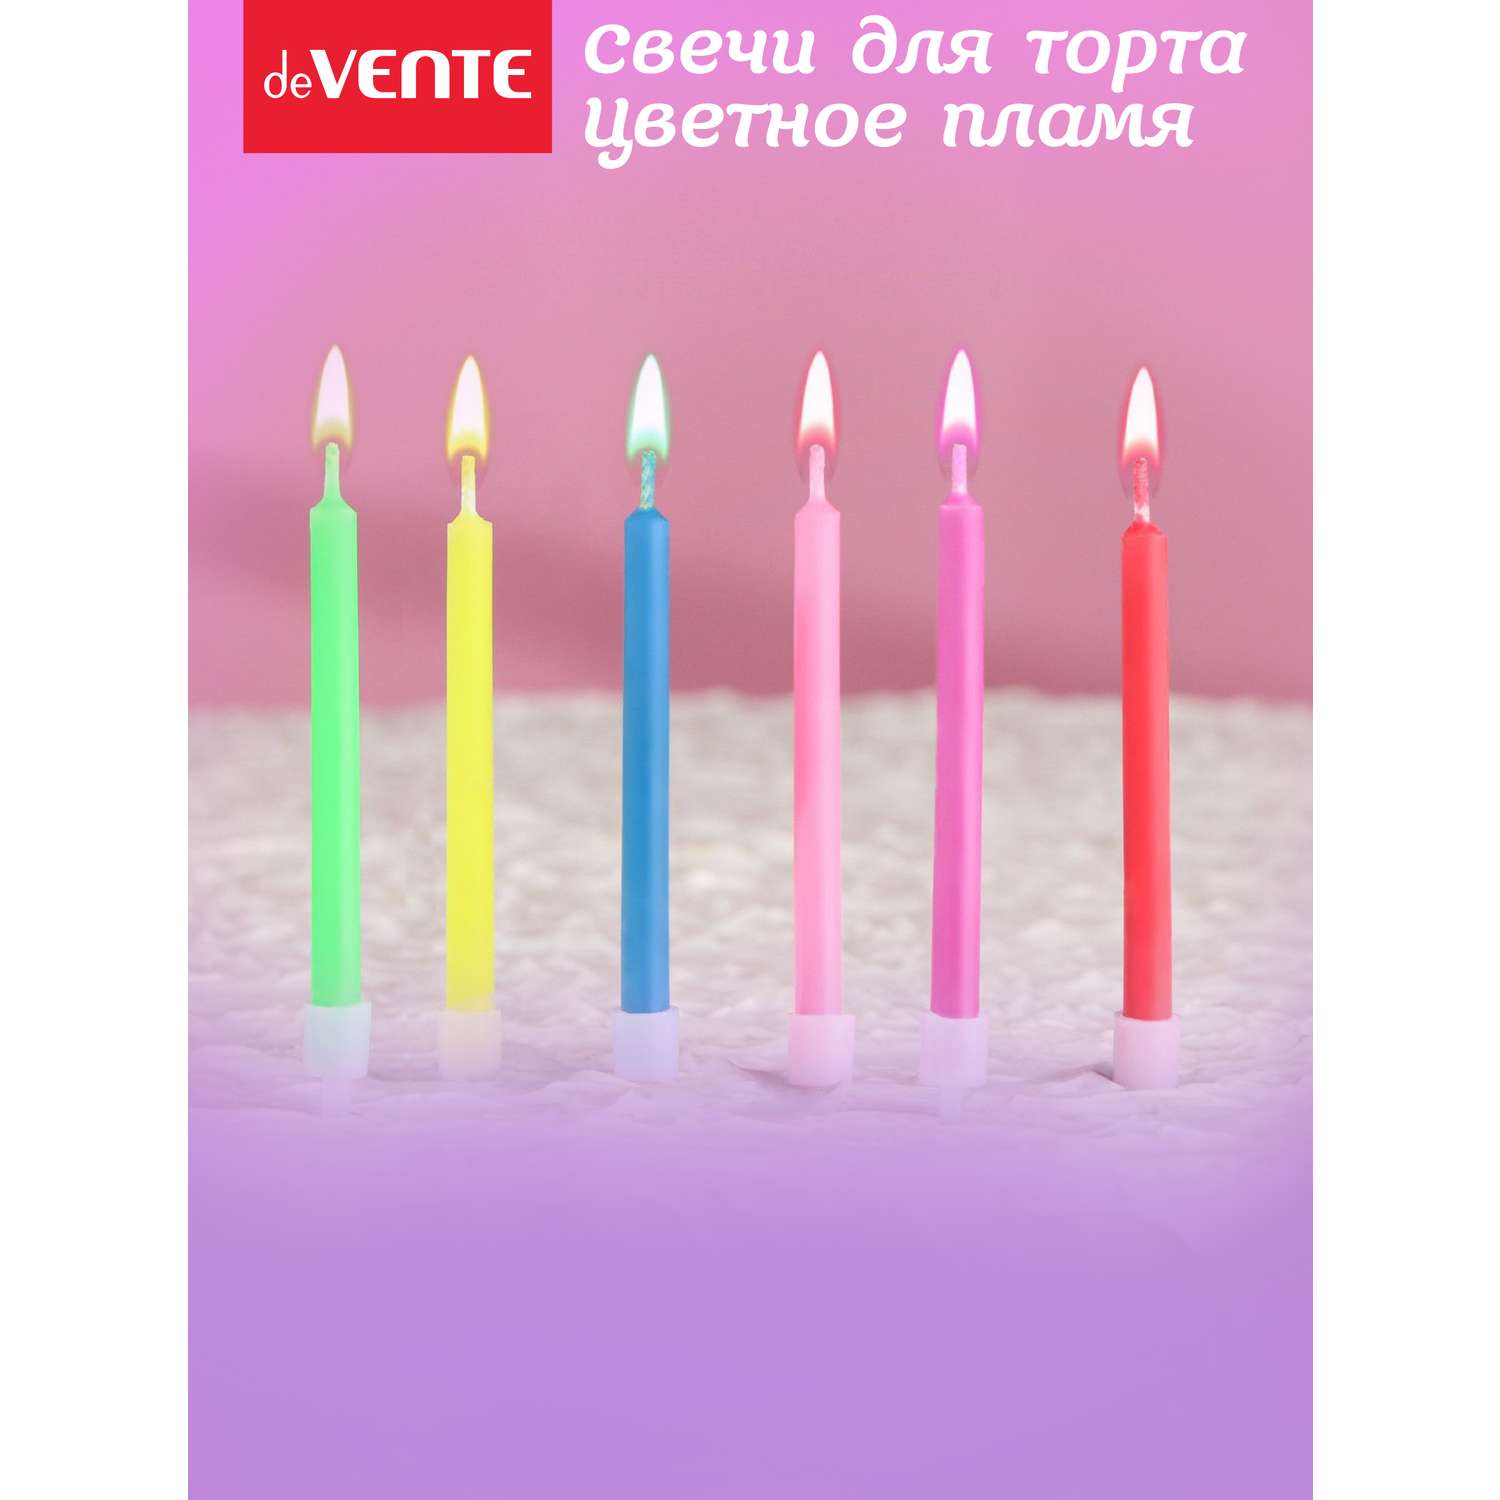 Набор свечей для торта deVENTE с цветным огнем - фото 5